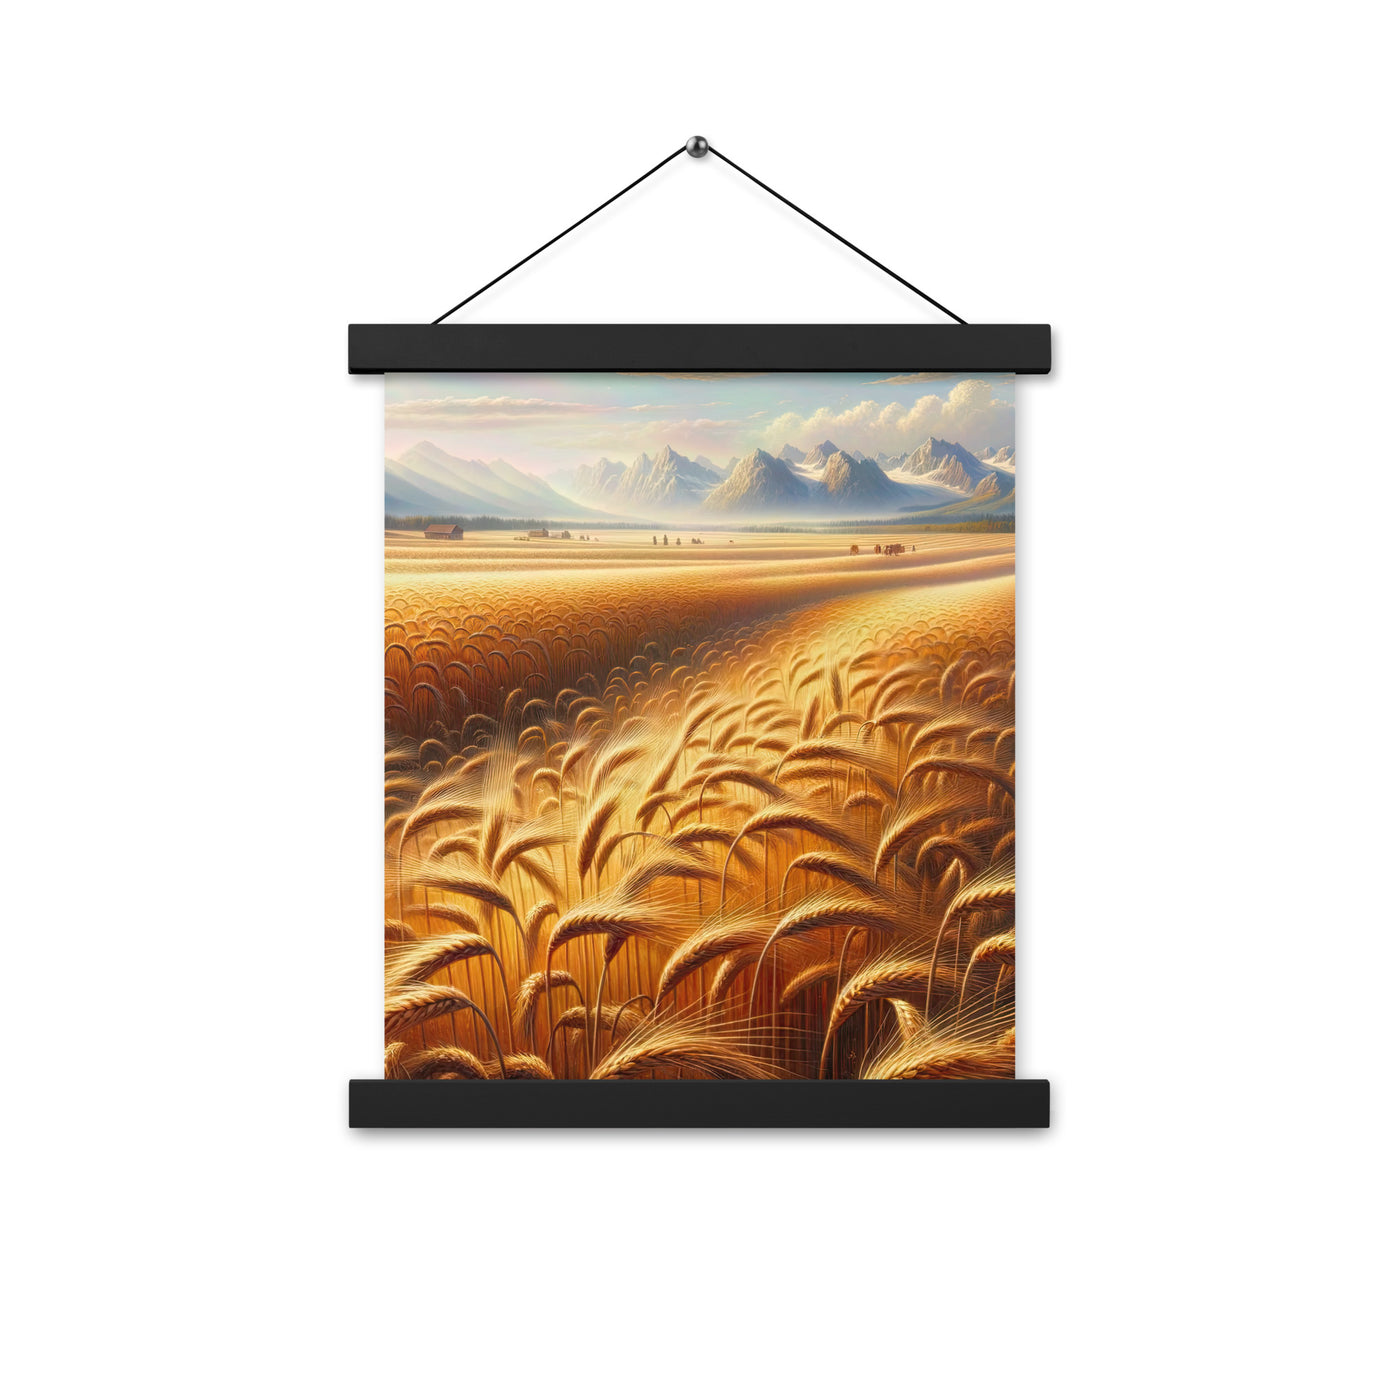 Ölgemälde eines bayerischen Weizenfeldes, endlose goldene Halme (TR) - Premium Poster mit Aufhängung xxx yyy zzz 27.9 x 35.6 cm